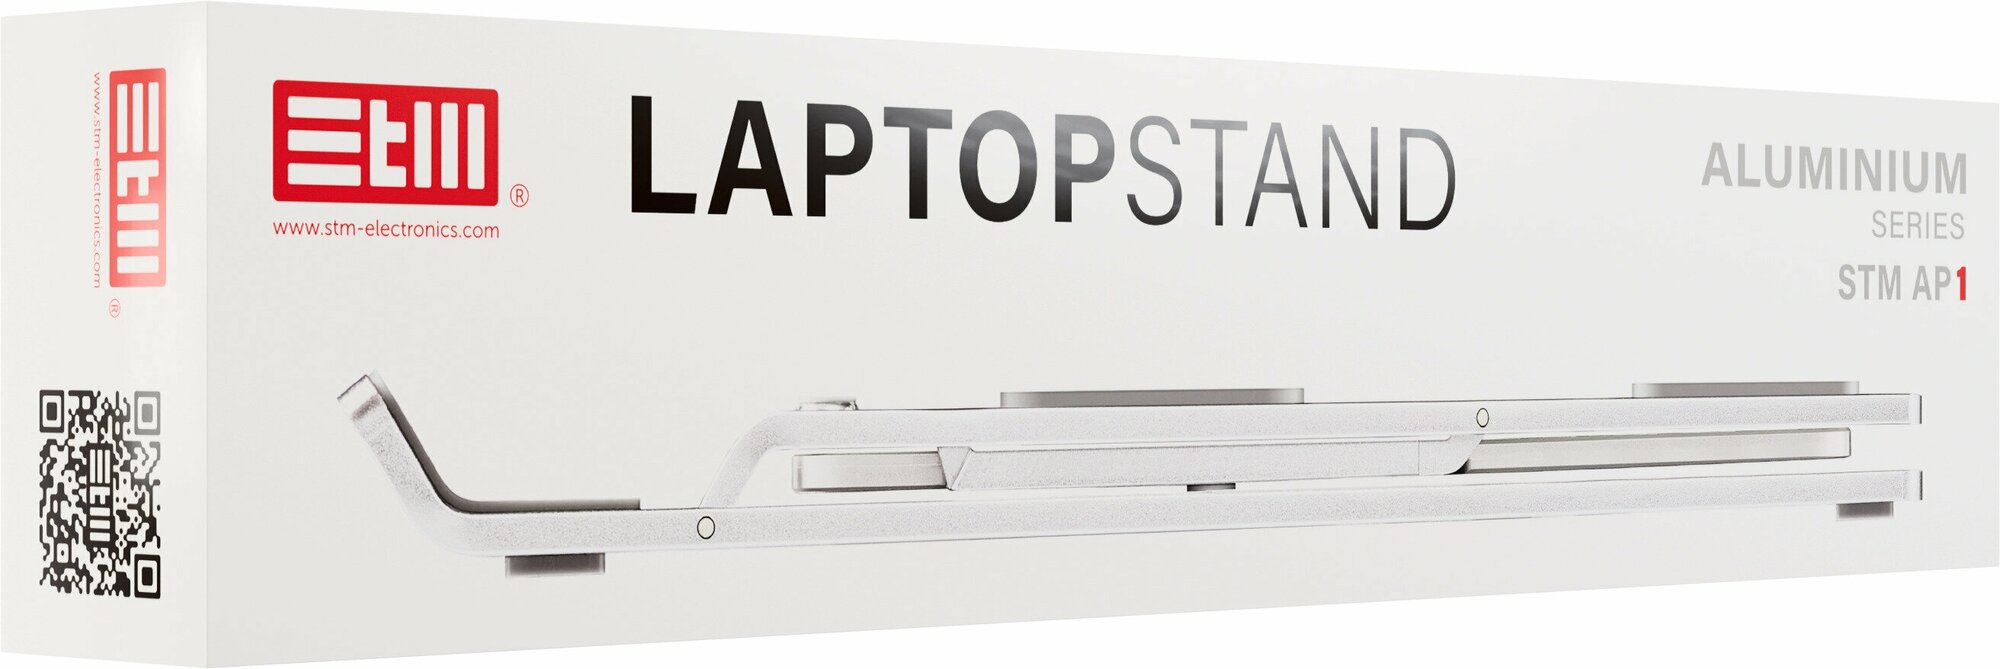 Регулируемая алюминиевая подставка для ноутбука/планшета STM, до 15.6 дюймов, 6 углов наклона, AP1